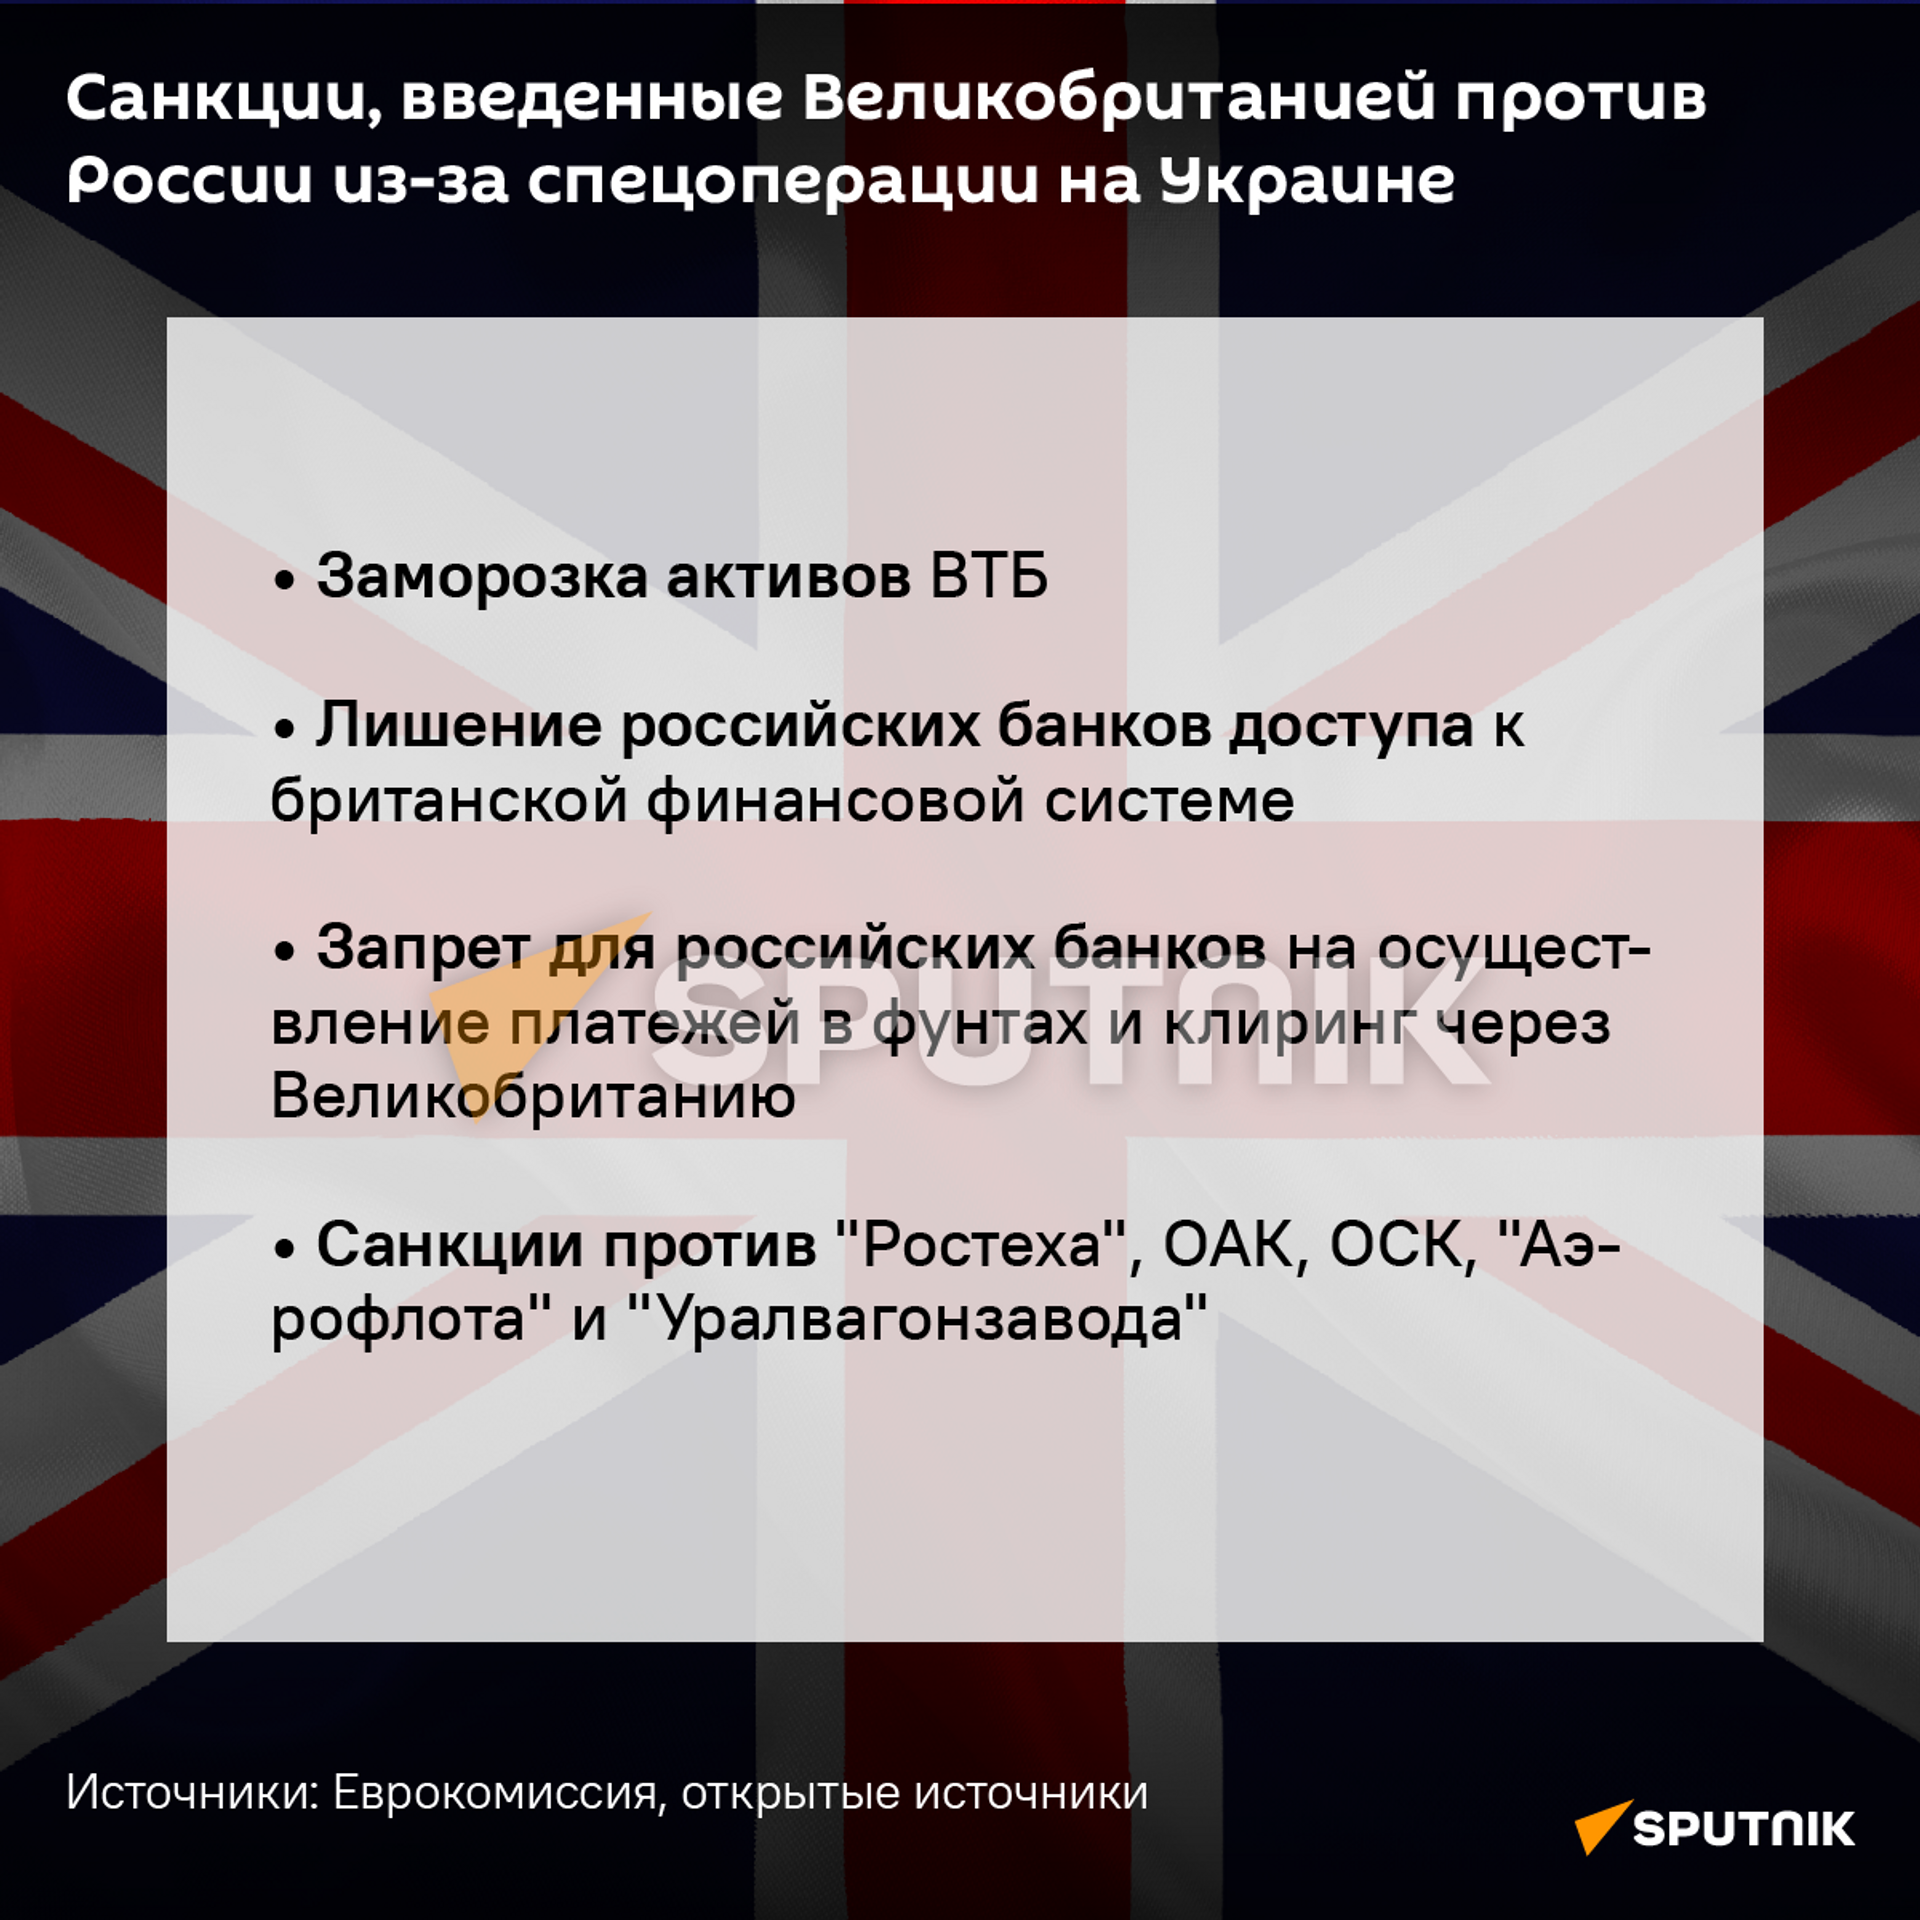 Санкции Великобритании, введенные против России - Sputnik Узбекистан, 1920, 26.02.2022